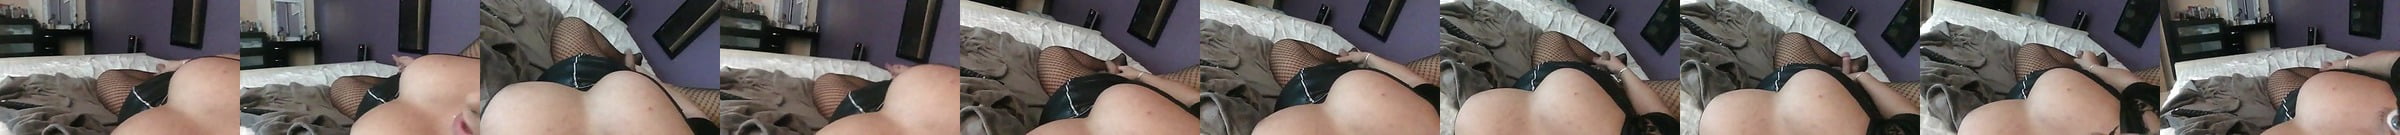 Tx Bella Shemale Masturbation And Hd Videos Porn Video 66